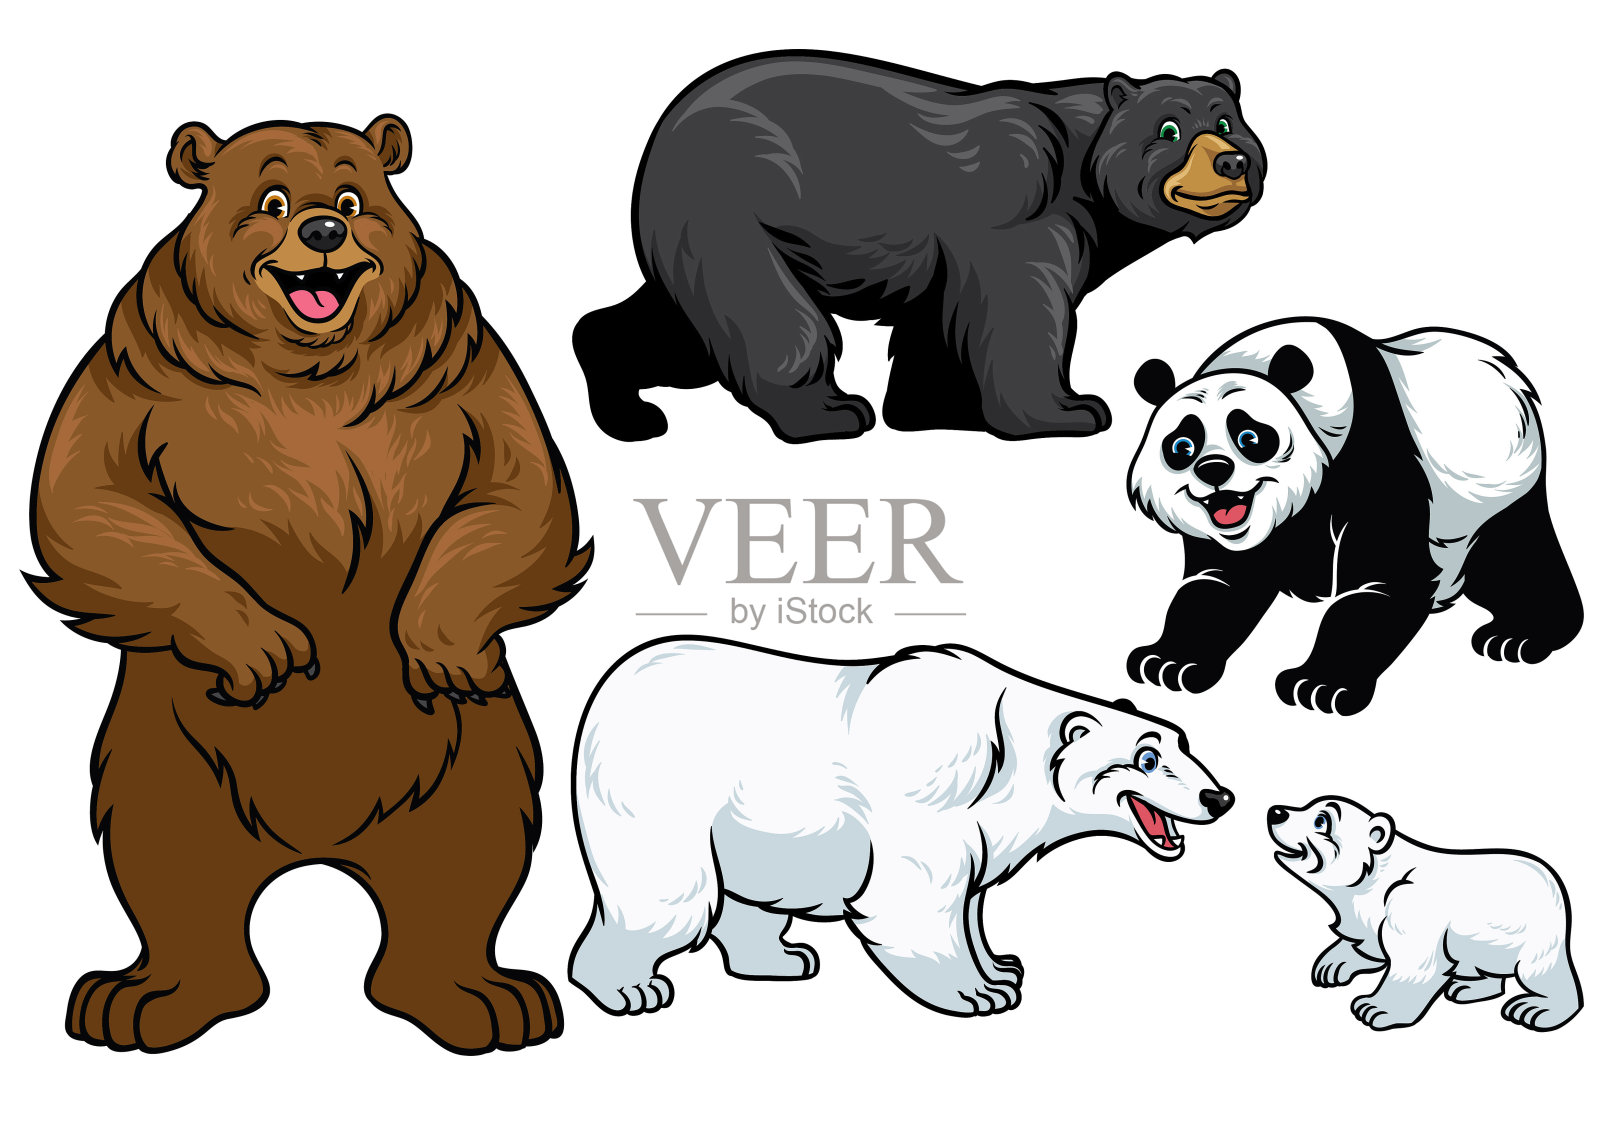 卡通风格的小熊插画图片素材